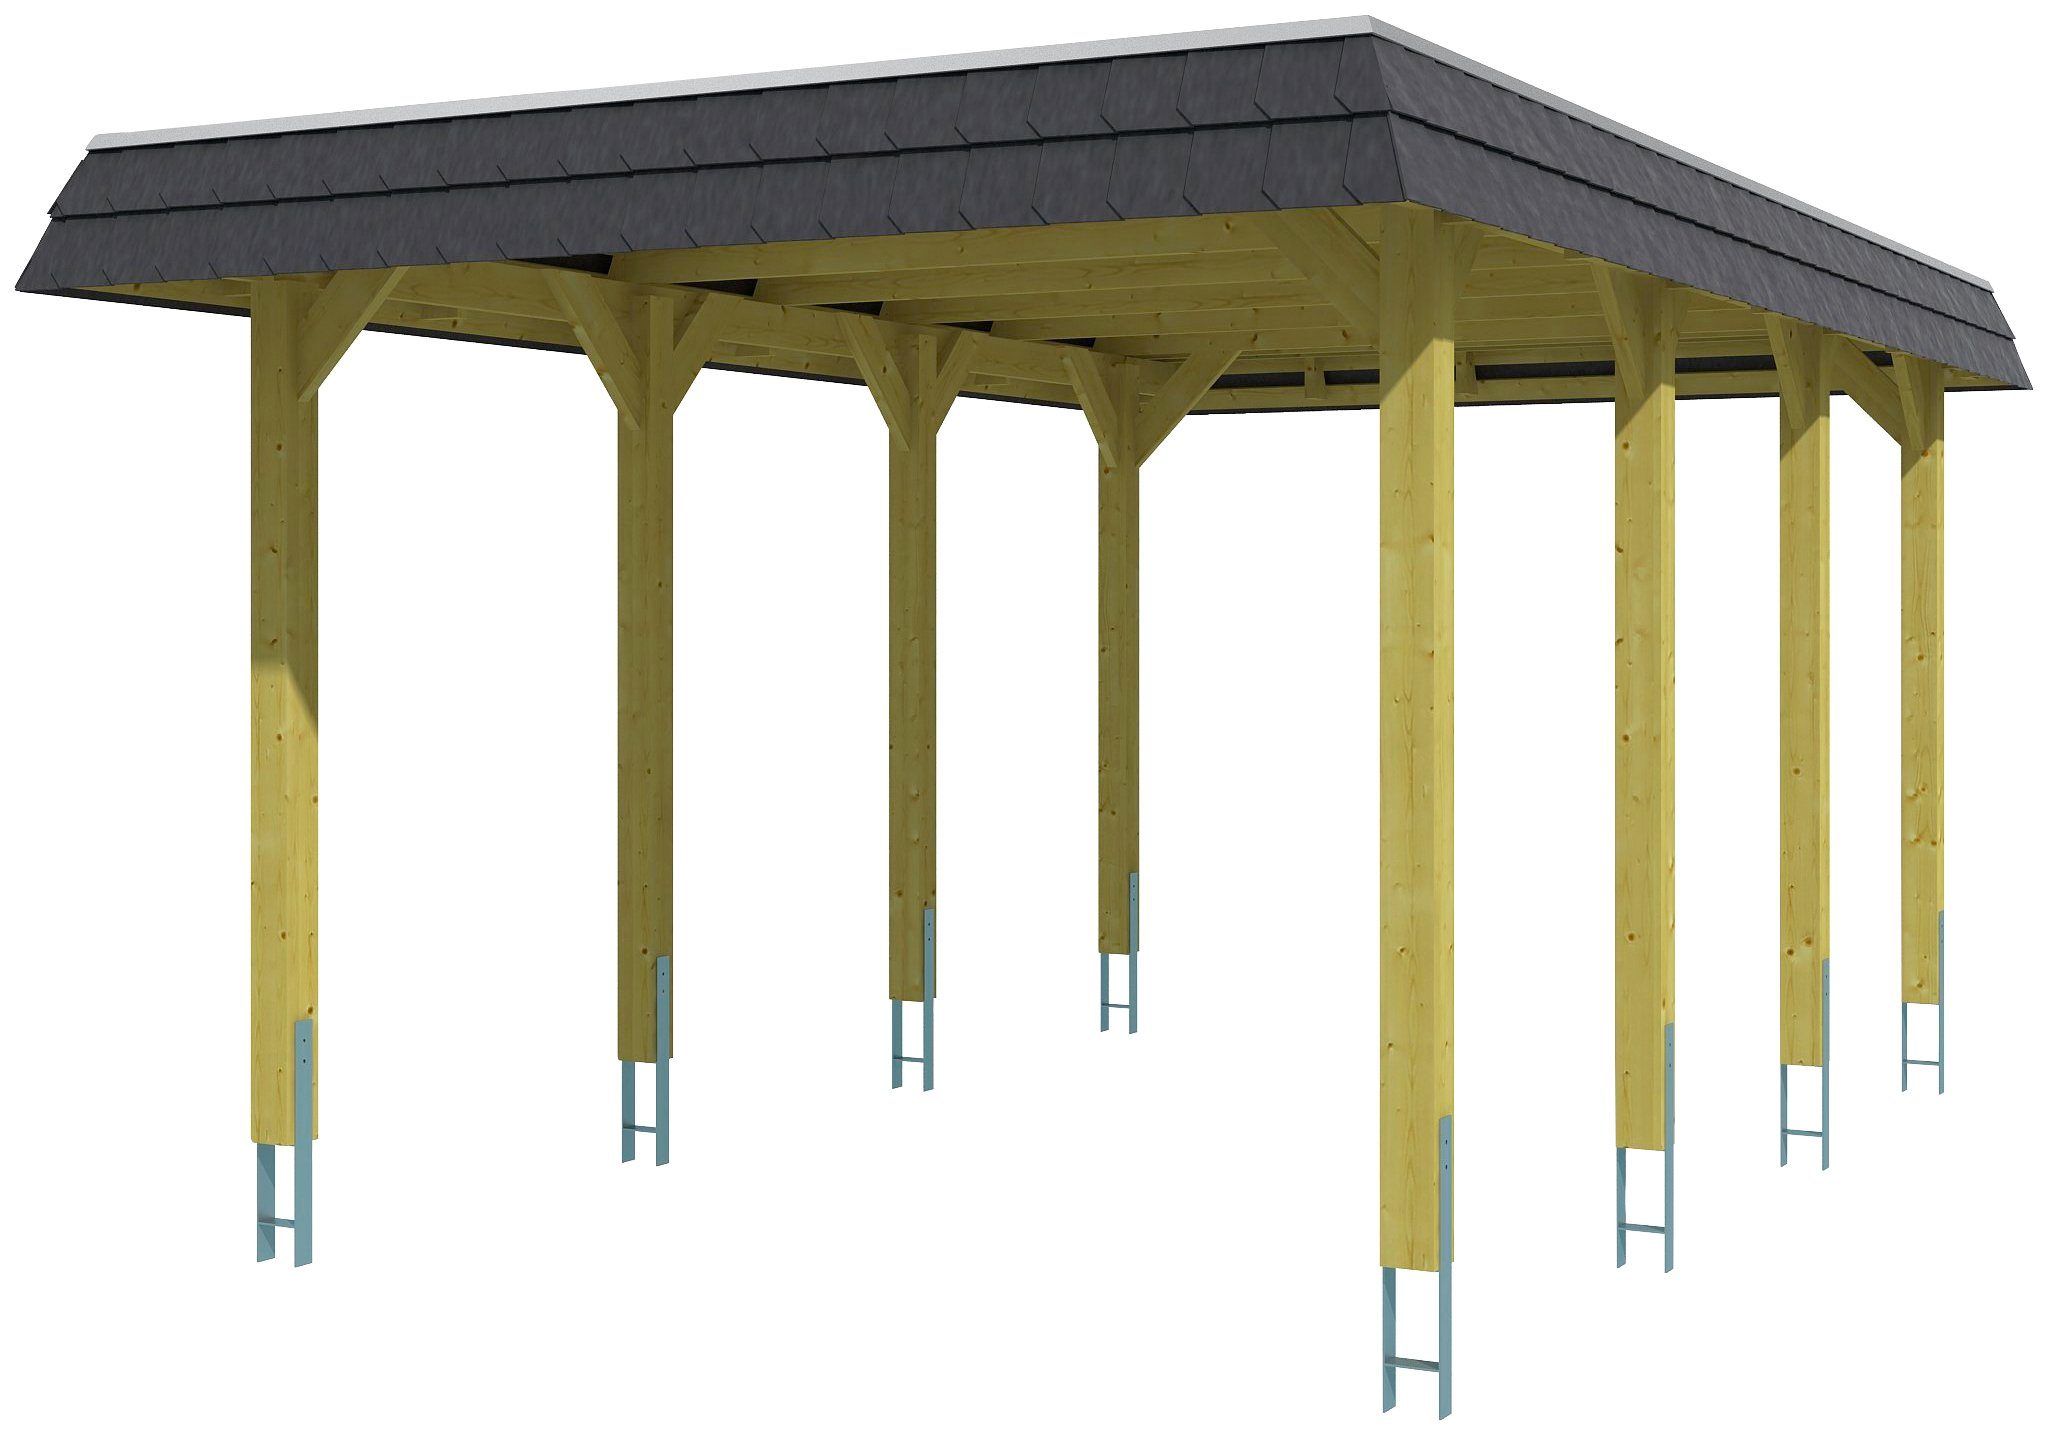 Skanholz Einzelcarport Spreewald, BxT: 345x589 cm, 206 cm Einfahrtshöhe,  Flachdach-Carport, Dachschalung mit EPDM-Folie